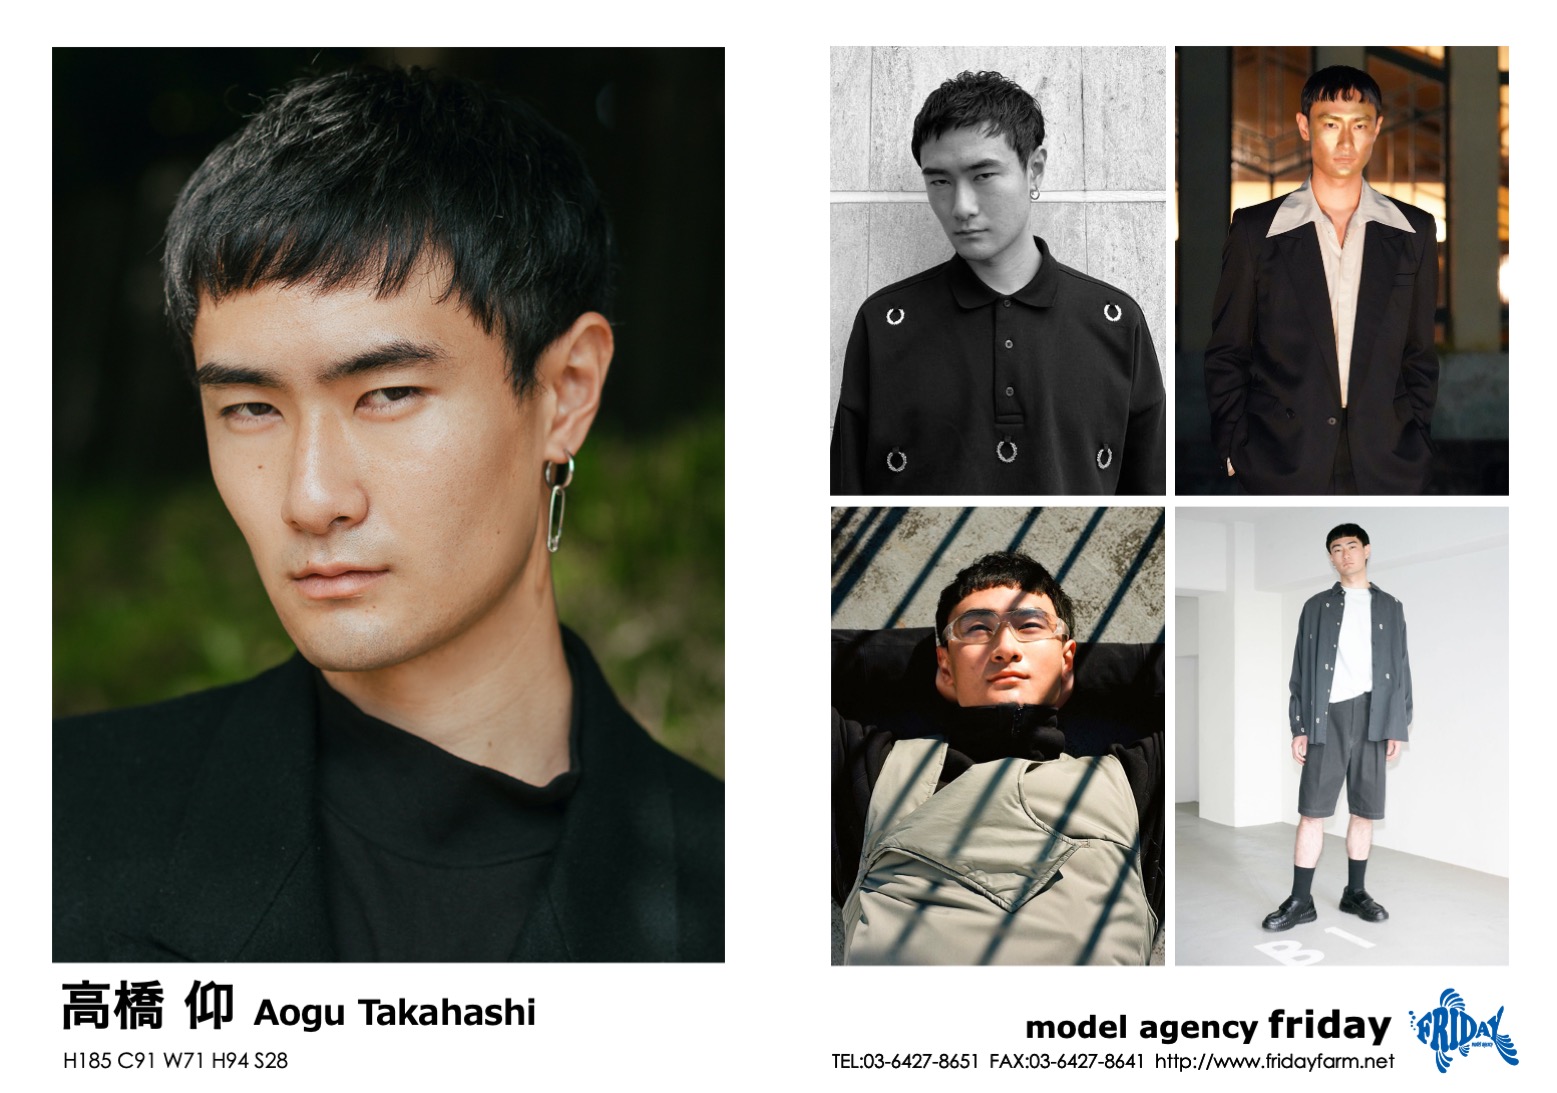 高橋 仰 - Aogu Takahashi | model agency friday